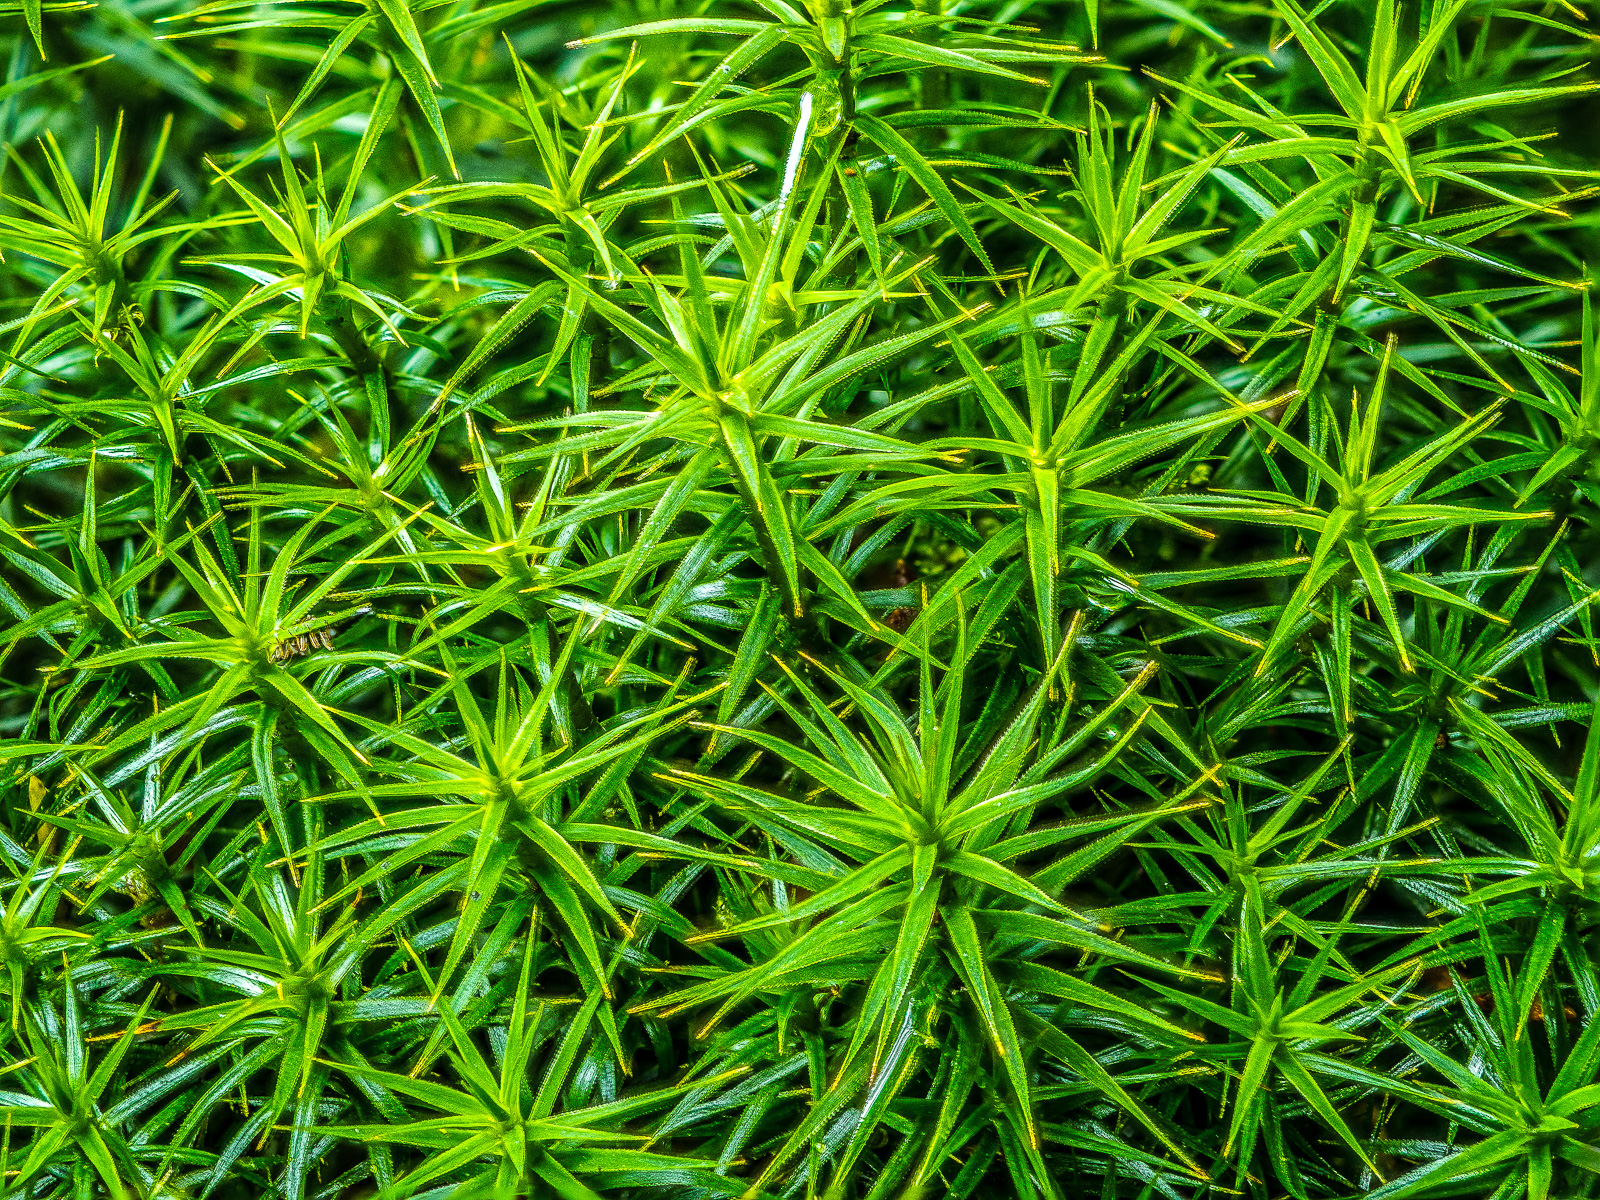 Sternchenmoos, das Foto ist praktisch durchgehend grün, die meisten Bereiche sind scharf, es entsteht eine sehr homogene Struktur